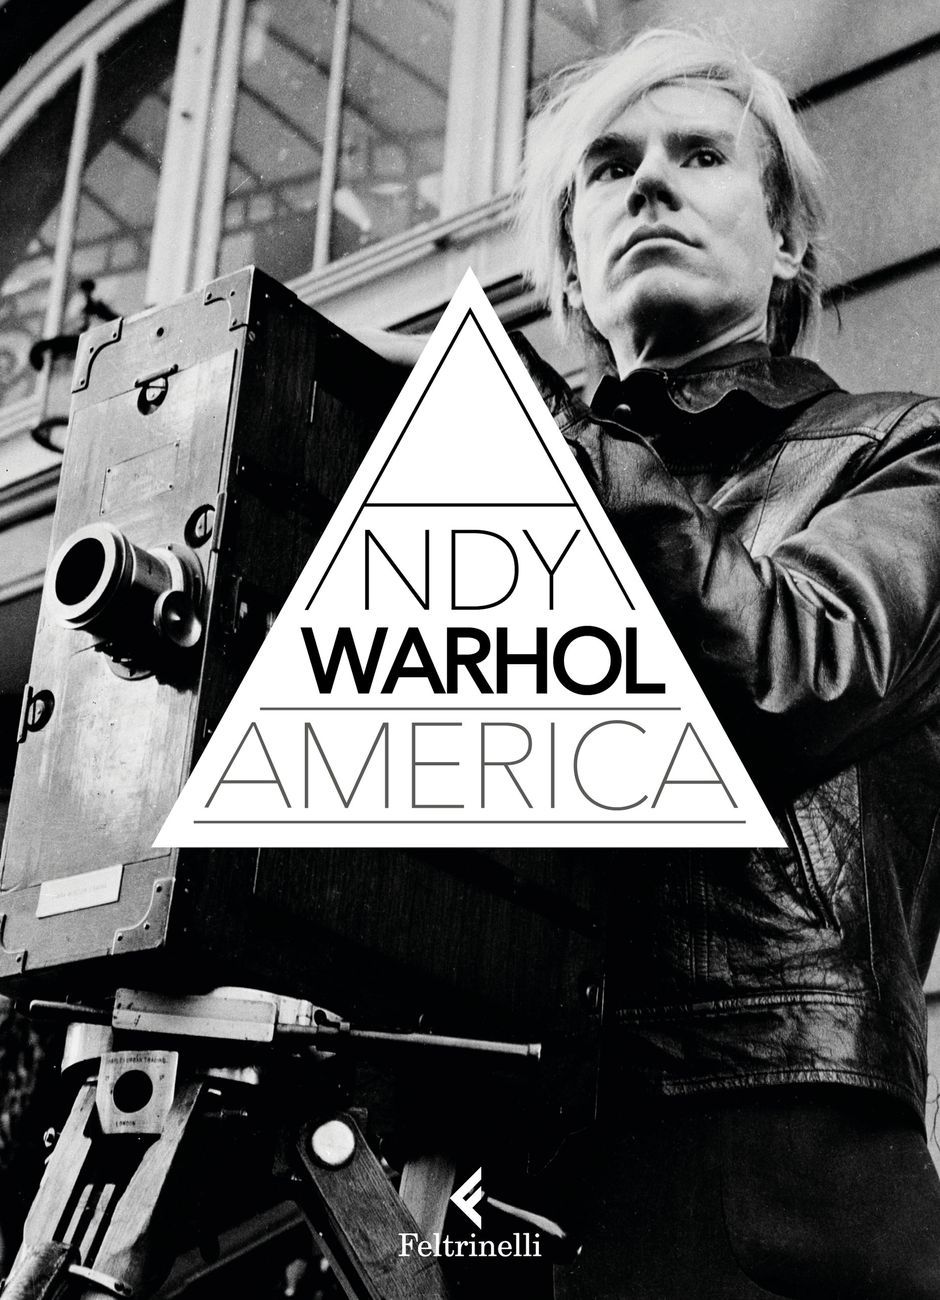 Andy Warhol, America (Feltrinelli, Milano 2017)